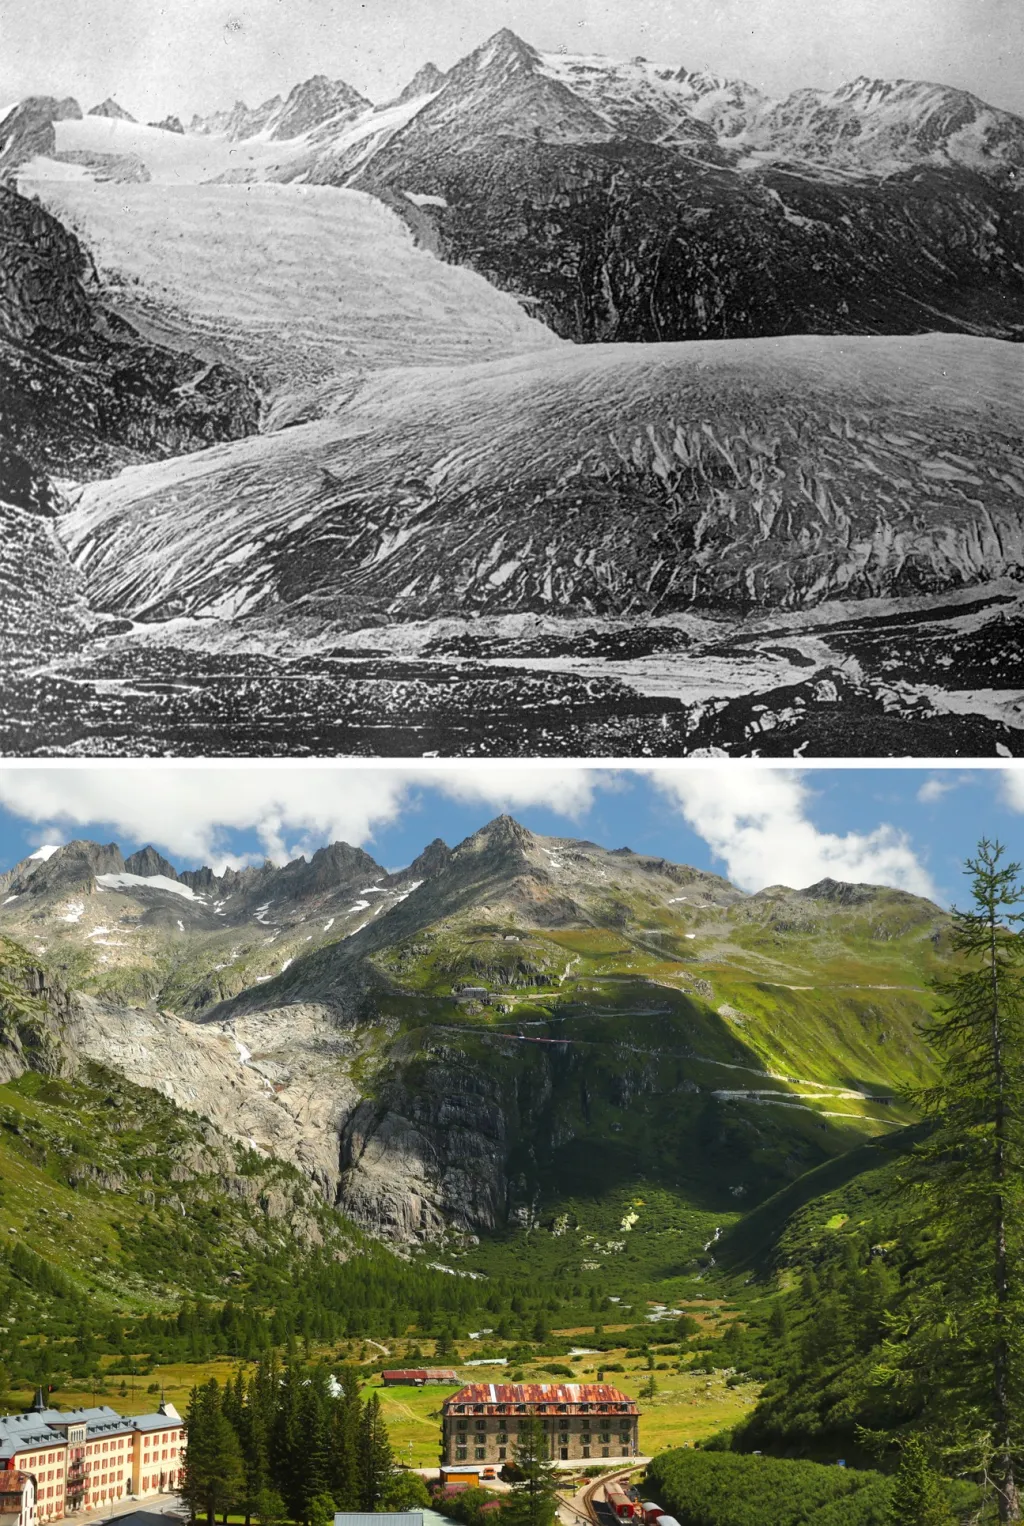 Ledový val, který zcela zmizel, ukazuje snímek z roku 1849. Současná fotografie ledovce Rhône byla pořízena v srpnu 2019